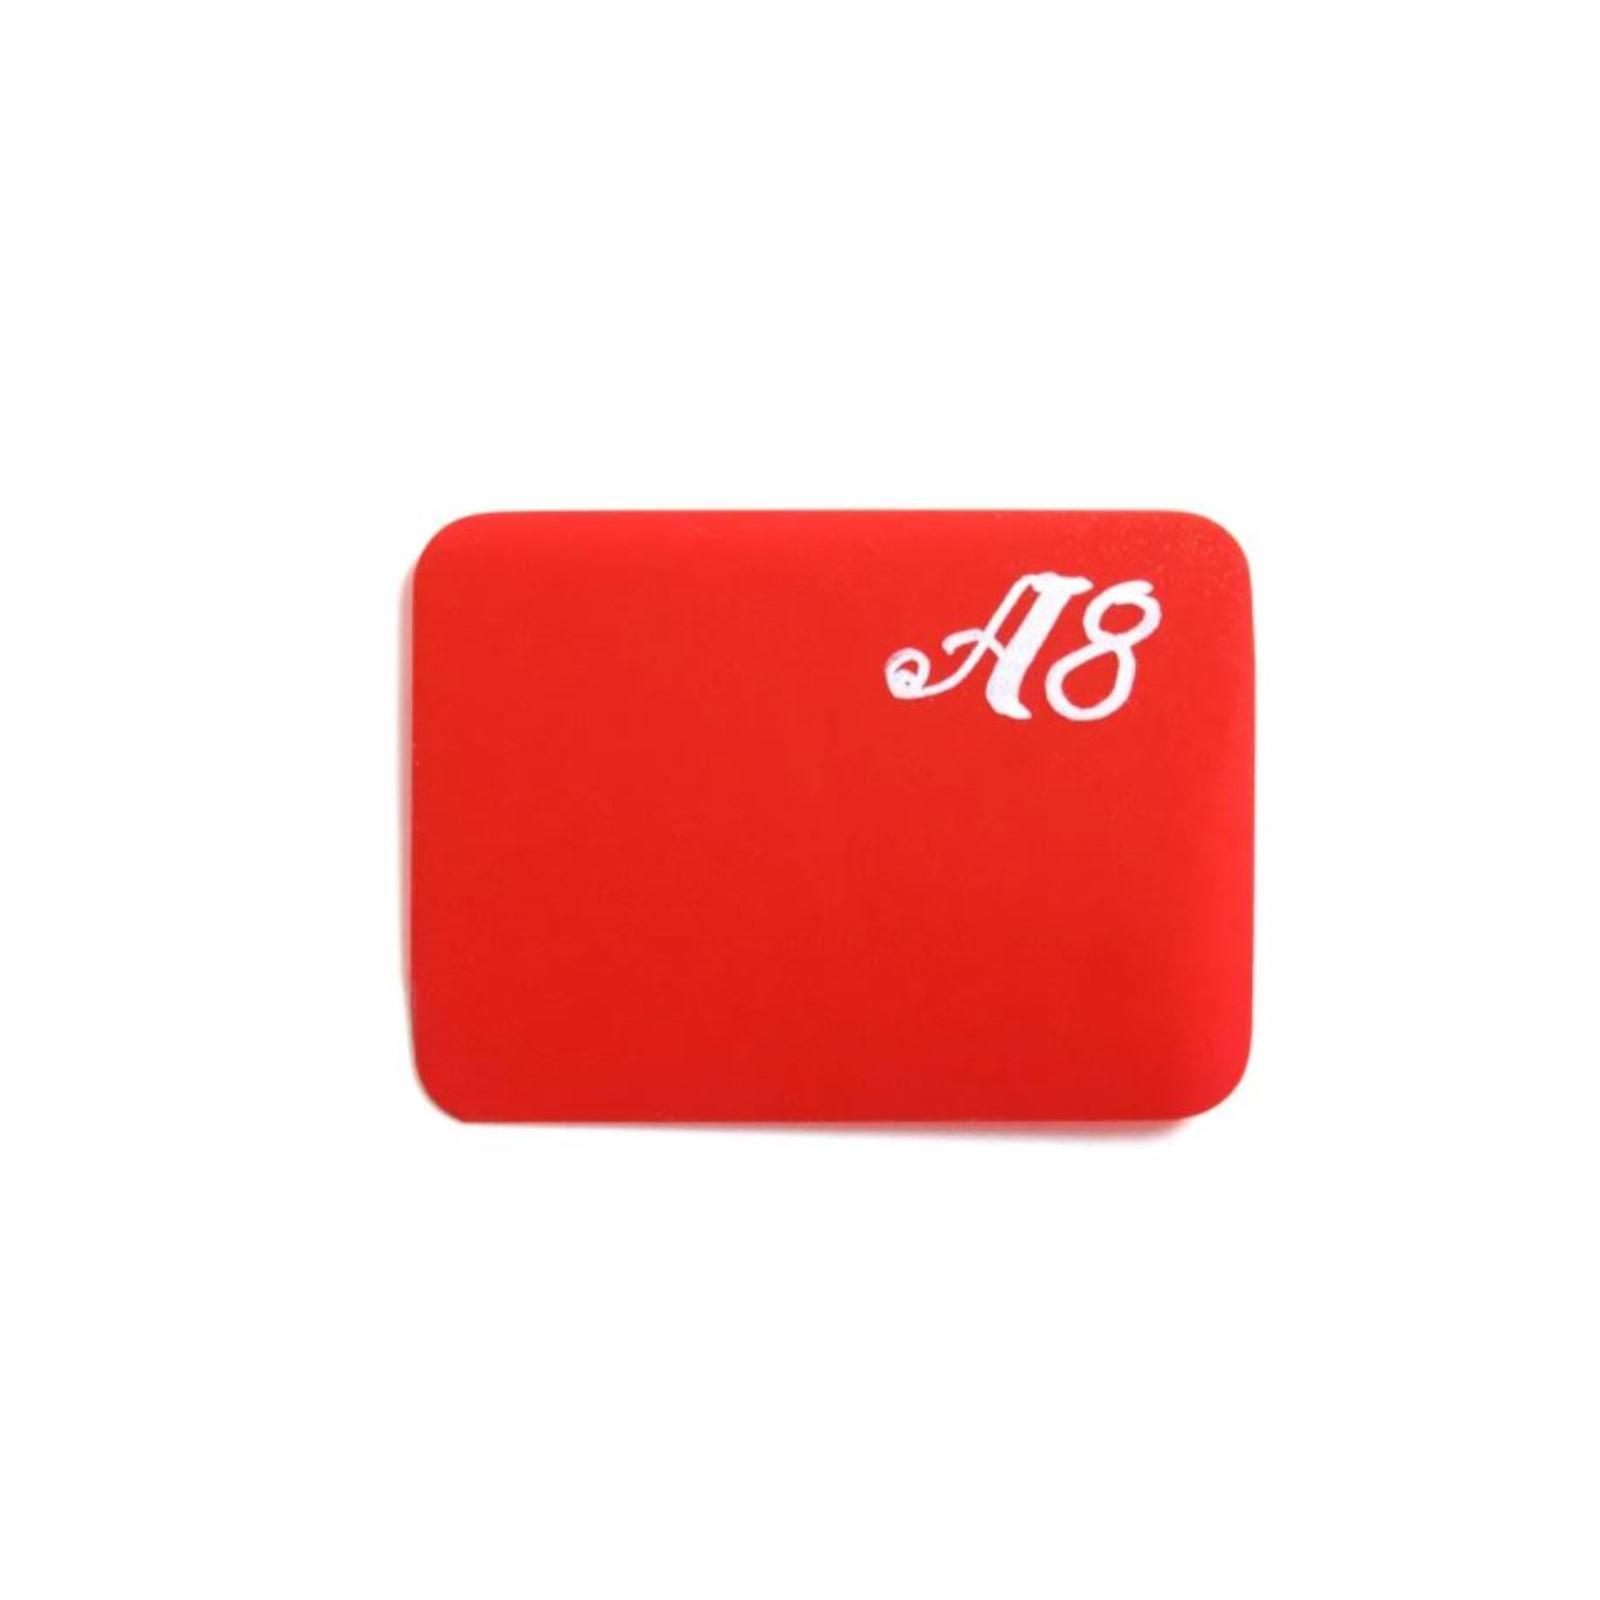 Ценник для надписей меловым маркером А8, цвет красный 4761601